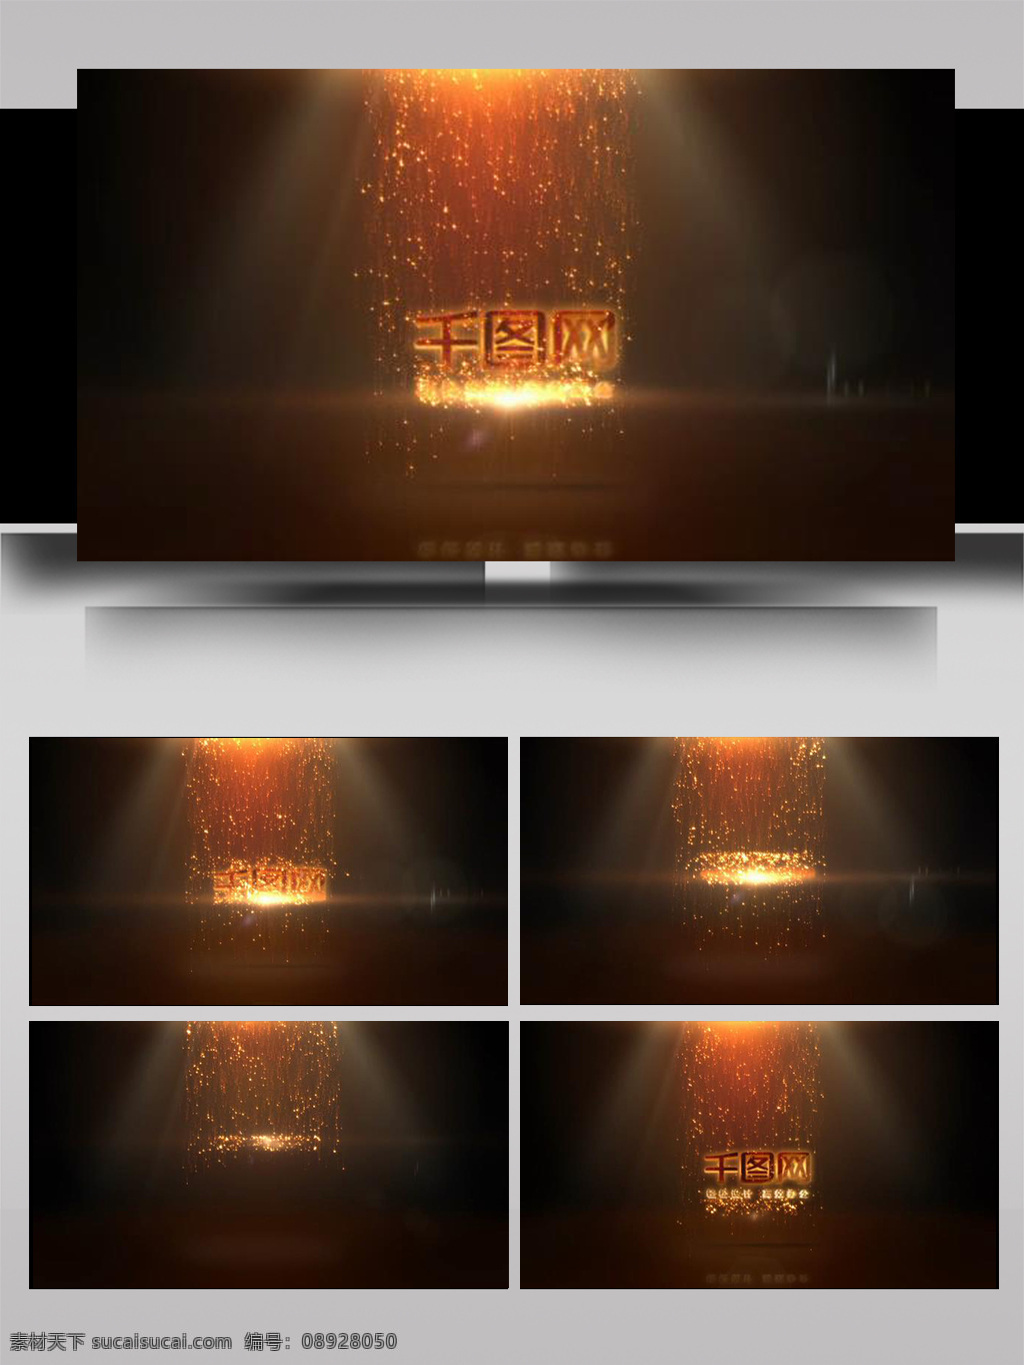 金色 流星 光点 堆积 震撼 文字 ae 模板 动感 立体 大气 展示 3d标志 扩散 组合 光影 片头 转场 过度 下落